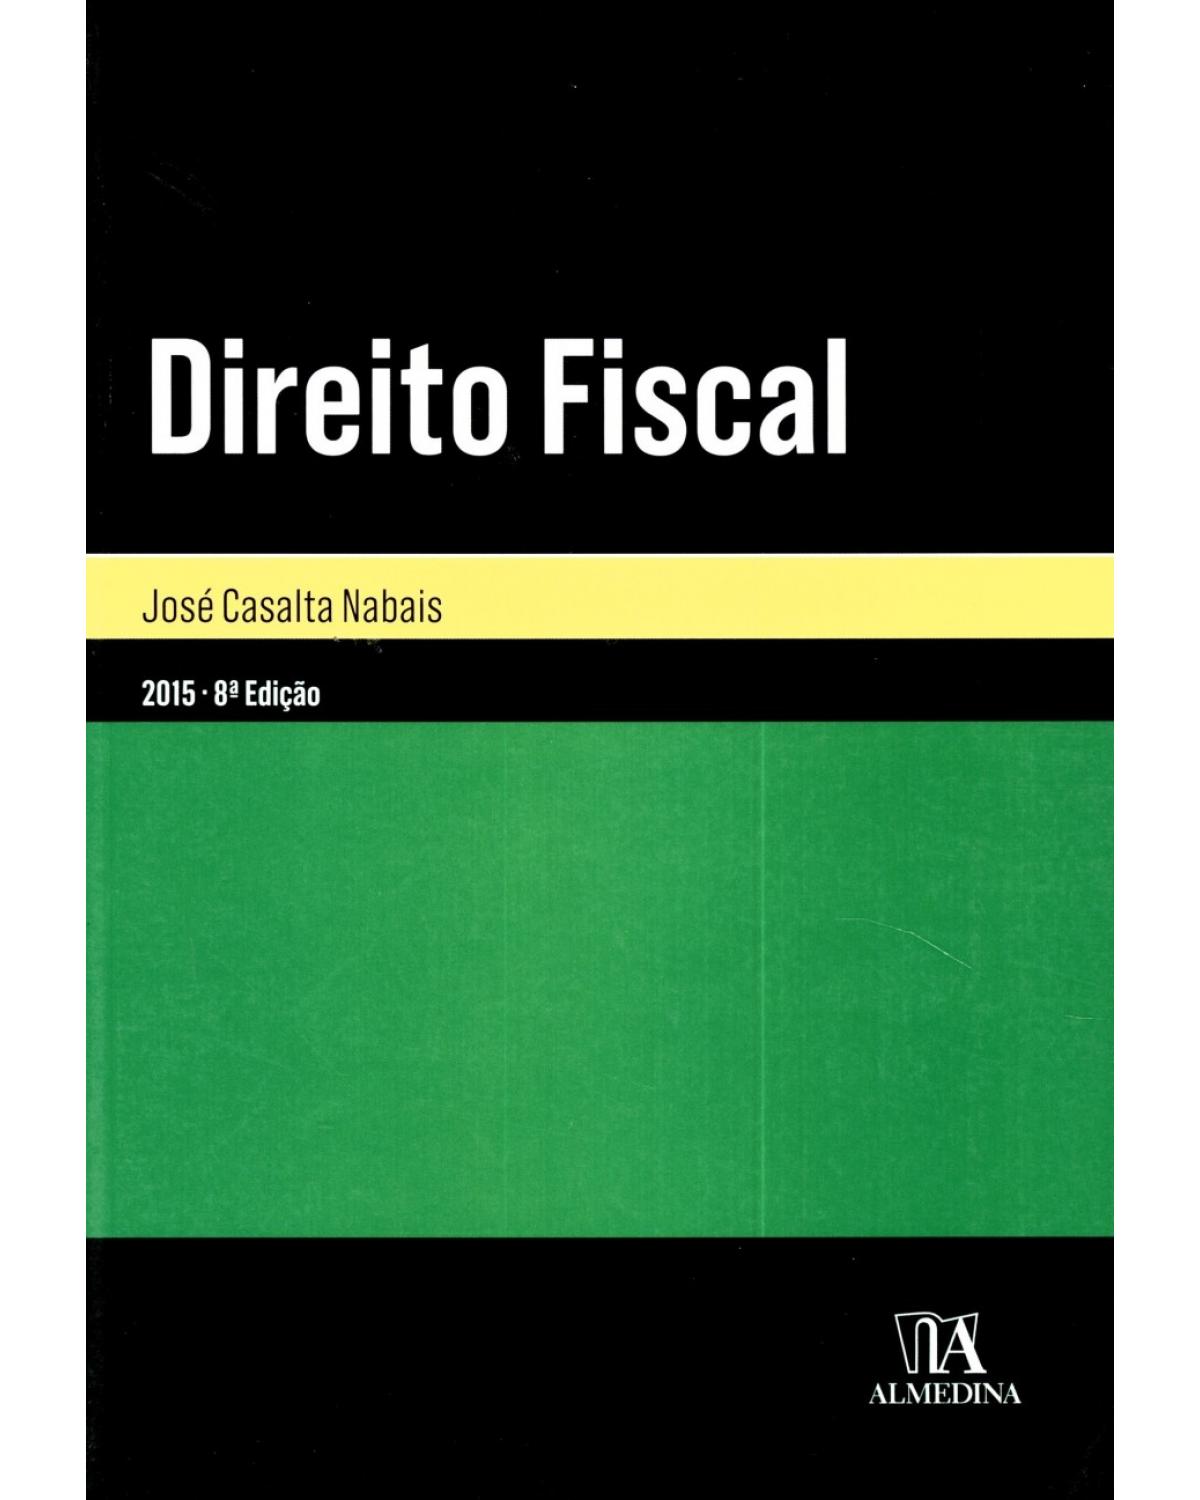 Direito fiscal - 8ª Edição | 2015